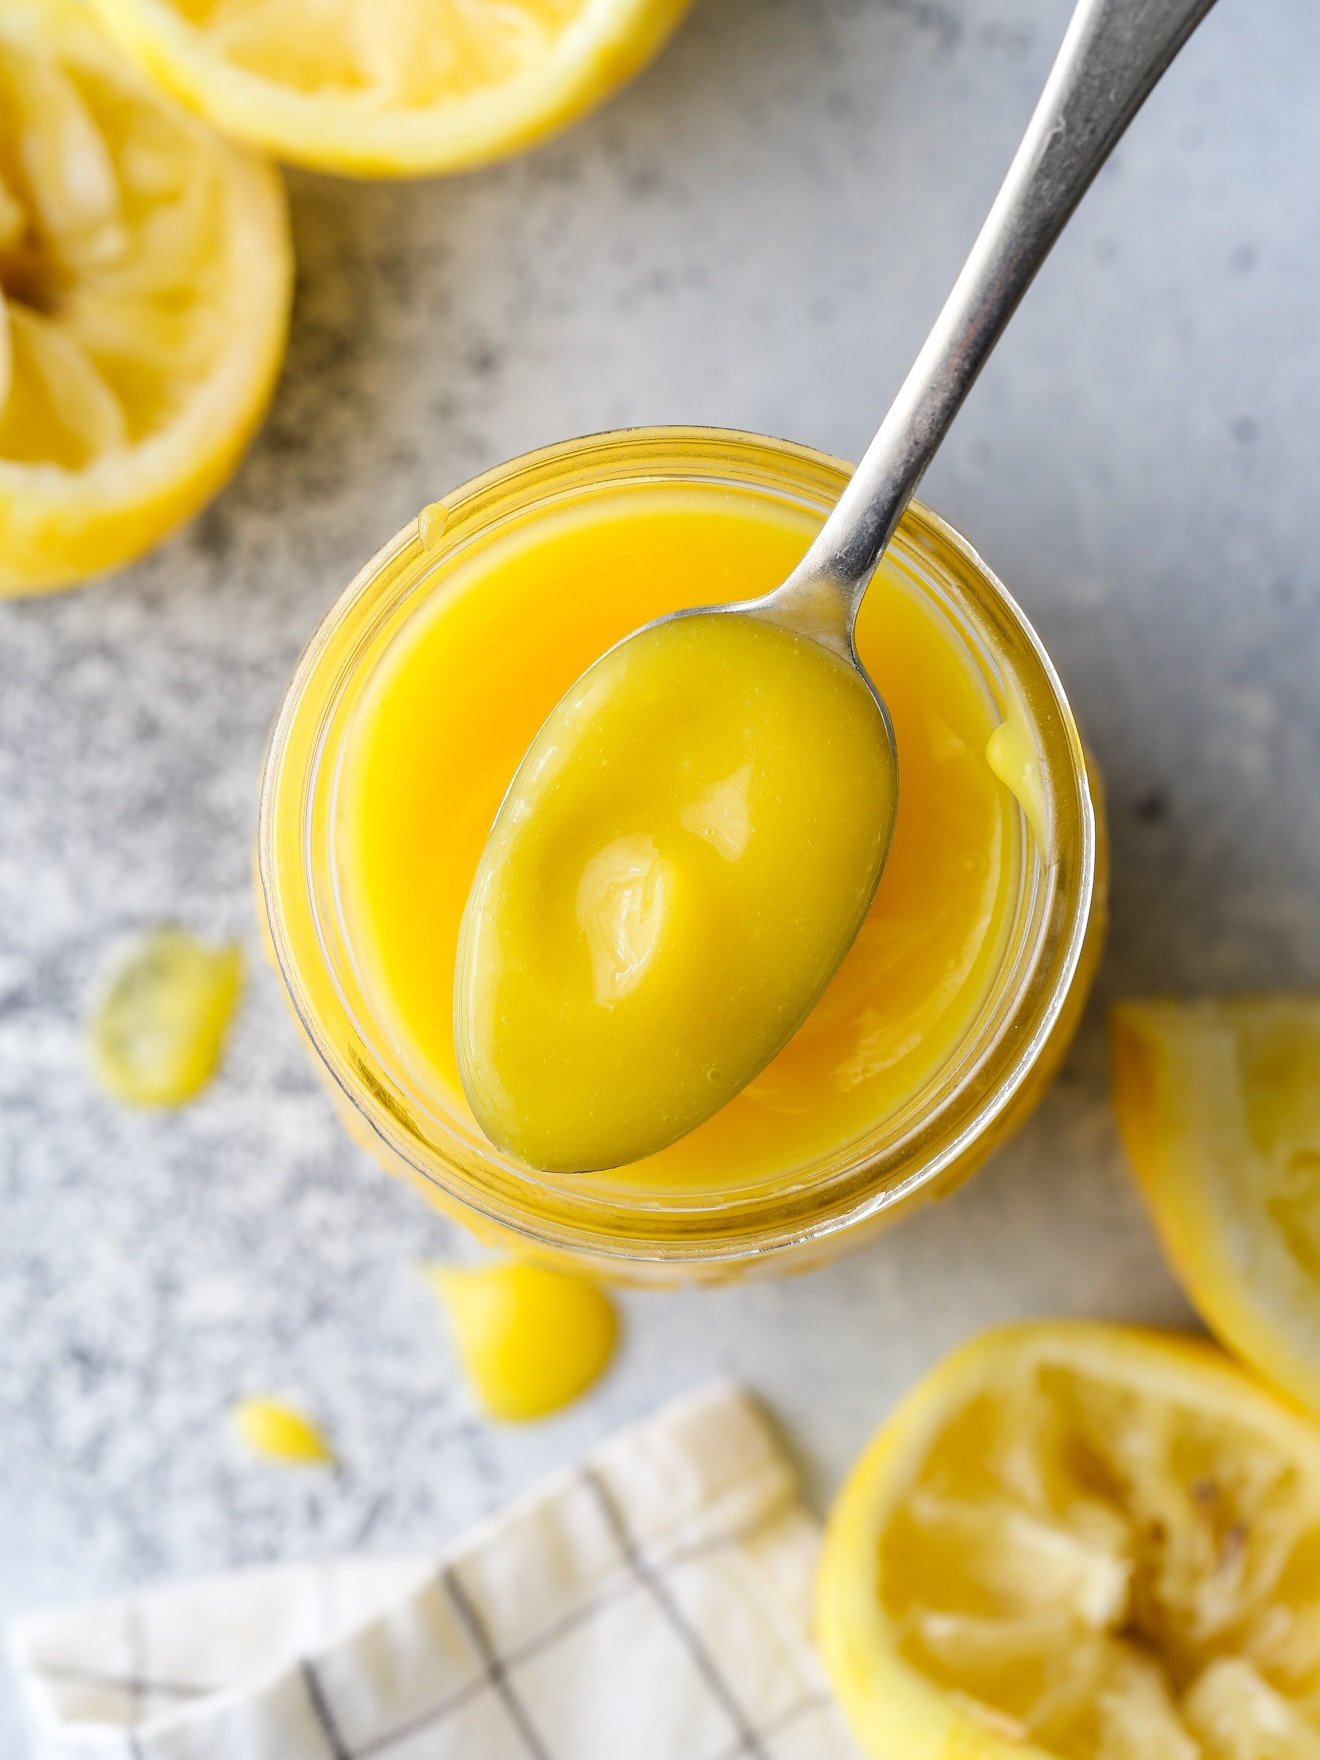 How to Make Homemade Lemon Curd